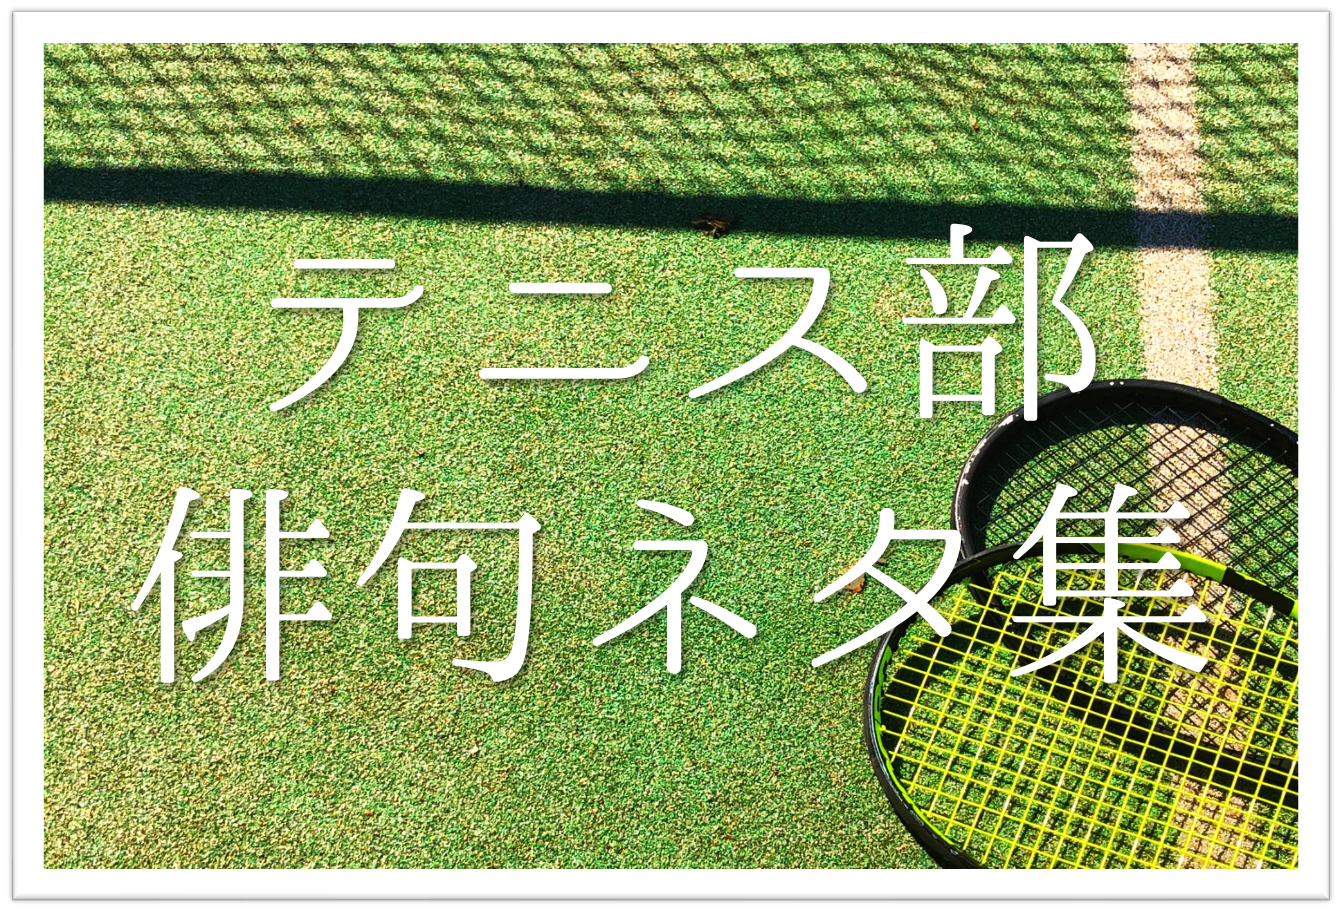 テニス 部活 をテーマにした俳句 選 学生向け おすすめ一般俳句ネタを紹介 夏の季語 俳句の教科書 俳句の作り方 有名俳句の解説サイト